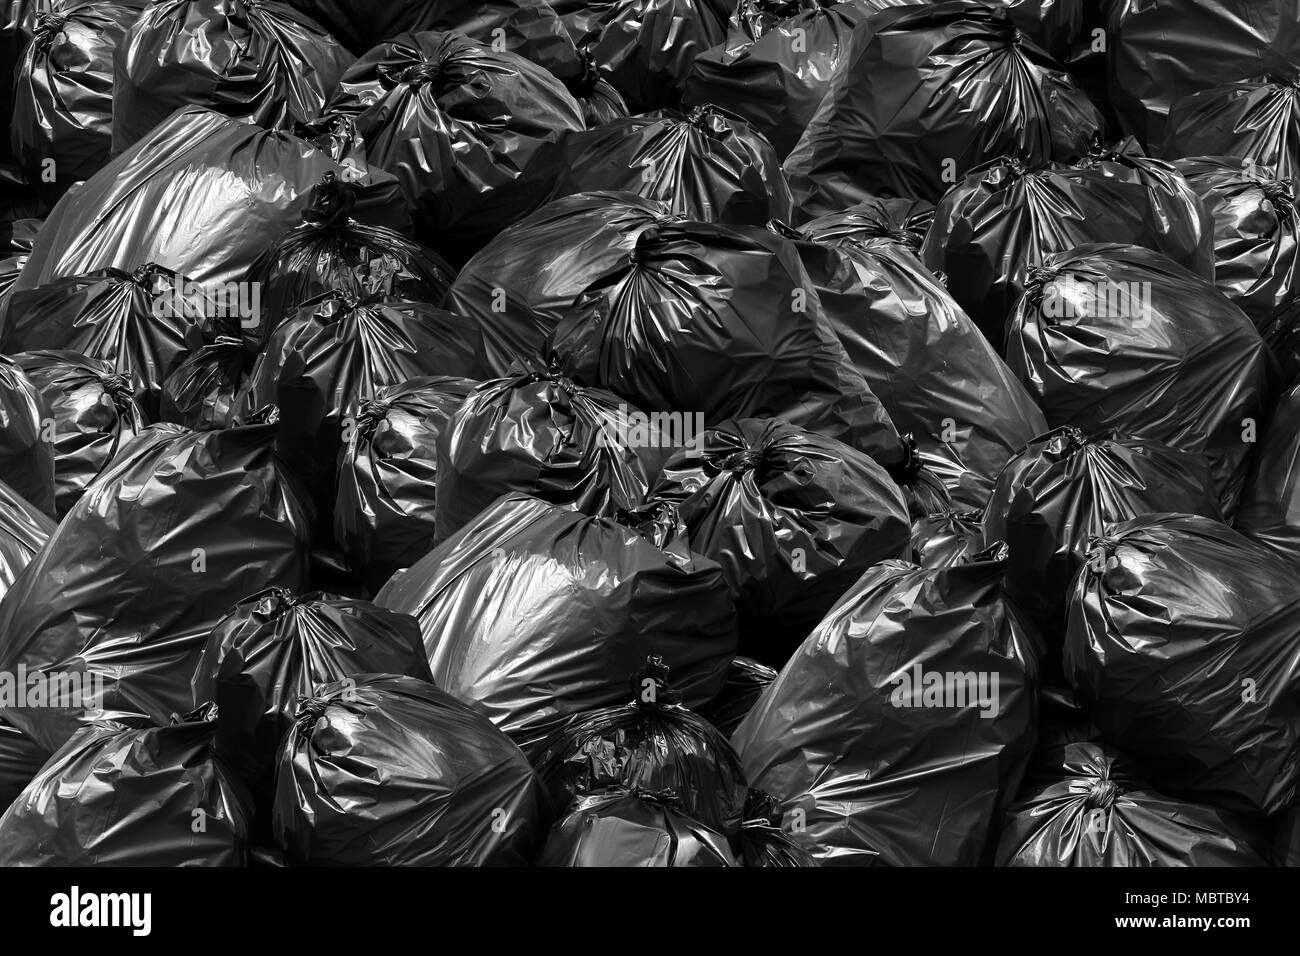 Background garbage bag black bin, Garbage dump, Bin,Trash, Garbage, Rubbish,  Plastic Bags pile junk garbage Trash texture Stock Photo - Alamy